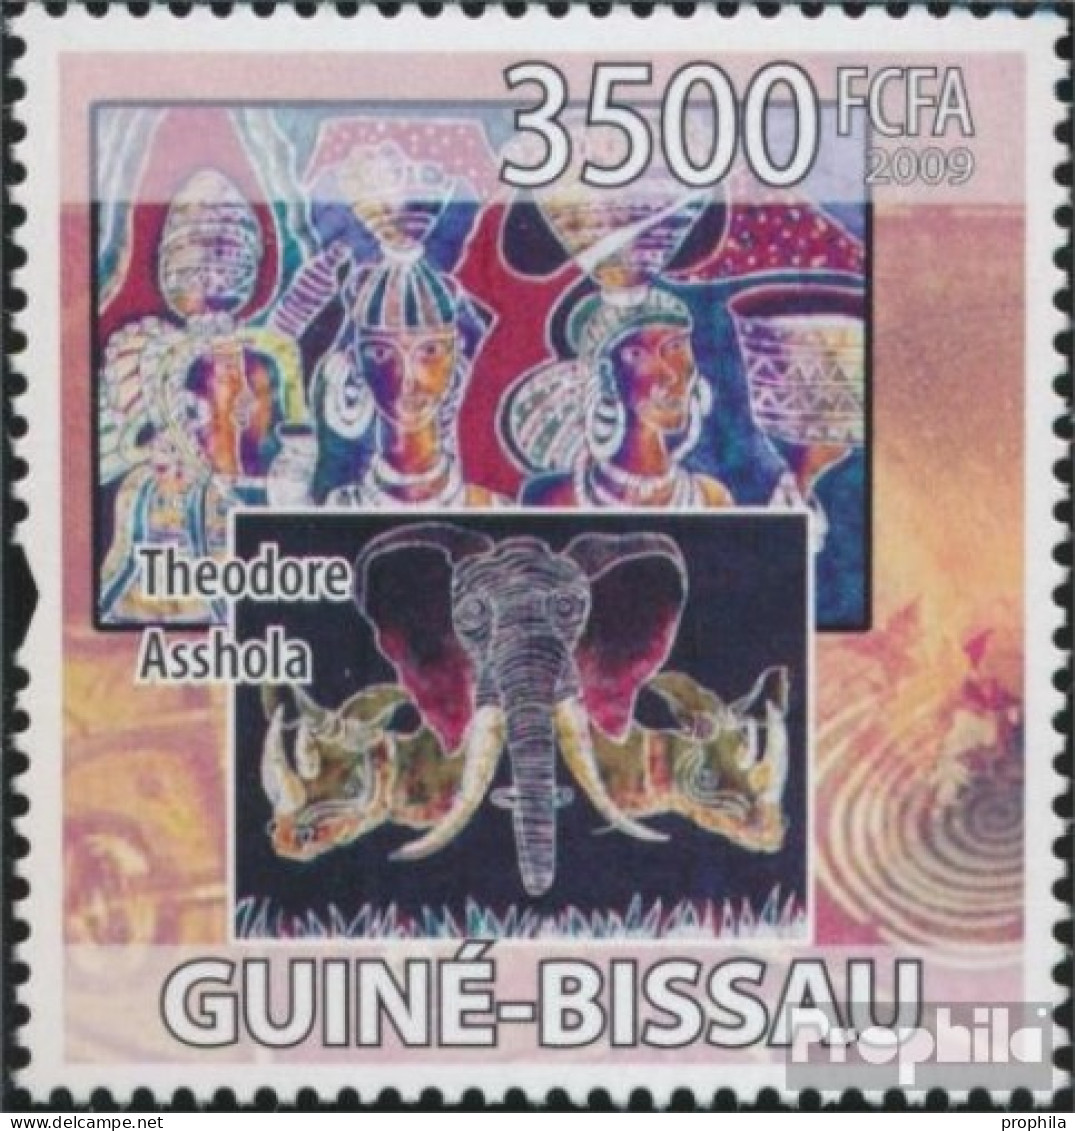 Guinea-Bissau 4264 (kompl. Ausgabe) Postfrisch 2009 Afrikanische Künstler - Guinea-Bissau